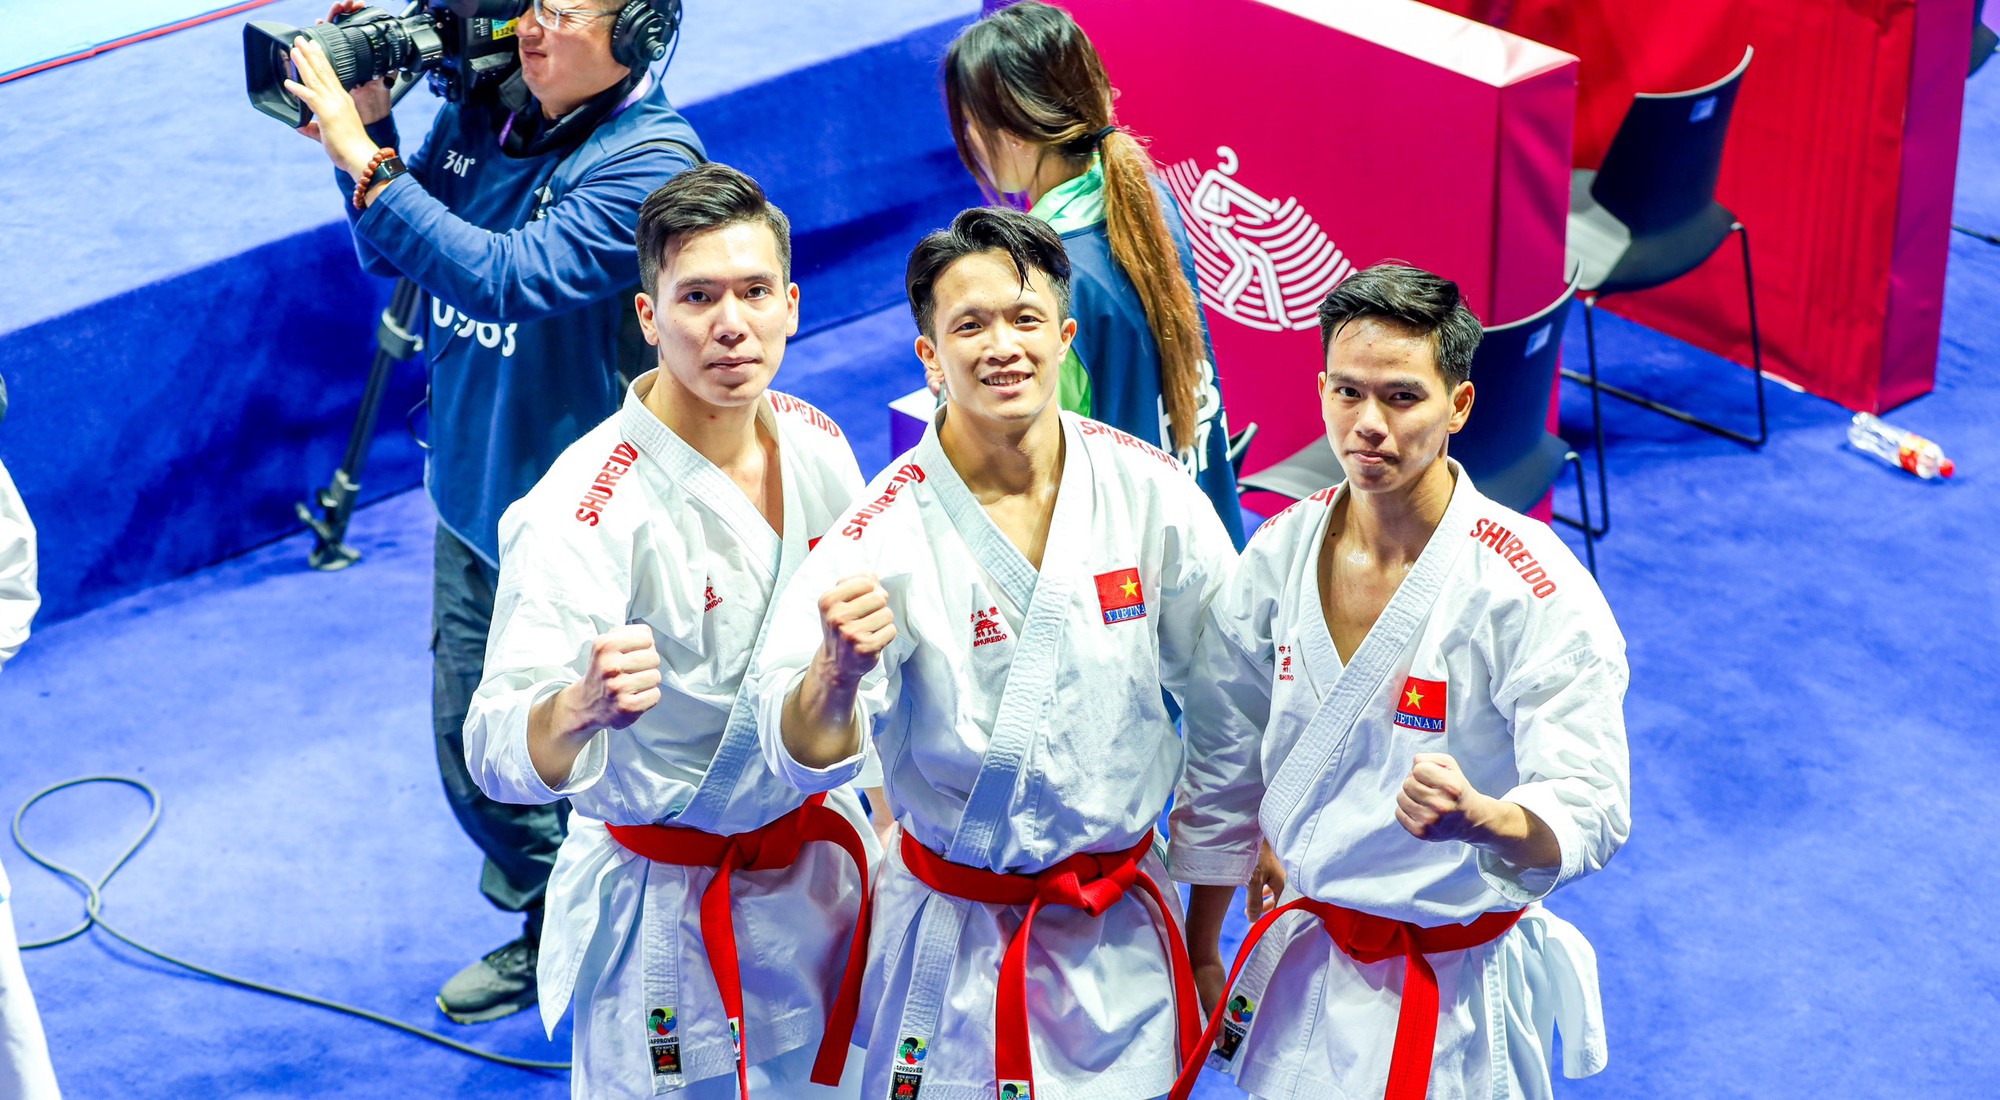 越南體育以3面金牌結束第19屆亞洲運動會 – 巴地日報